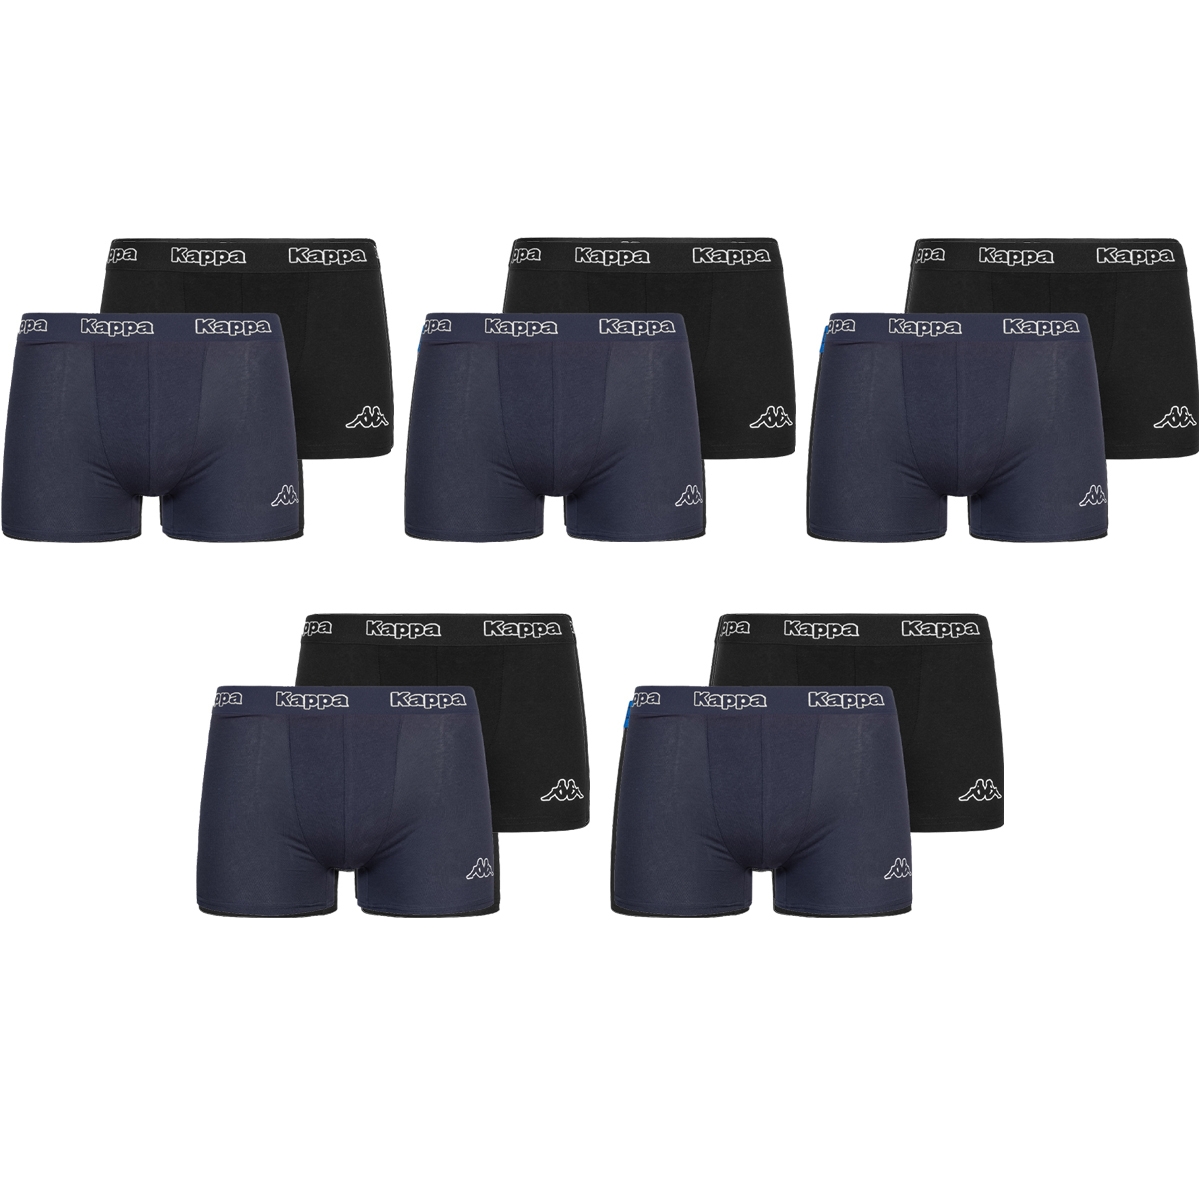 Kappa - boxershort heren - 10 stuks - marine/zwart - onderbroeken - Sorprese Mode accessoires Hem & Haar